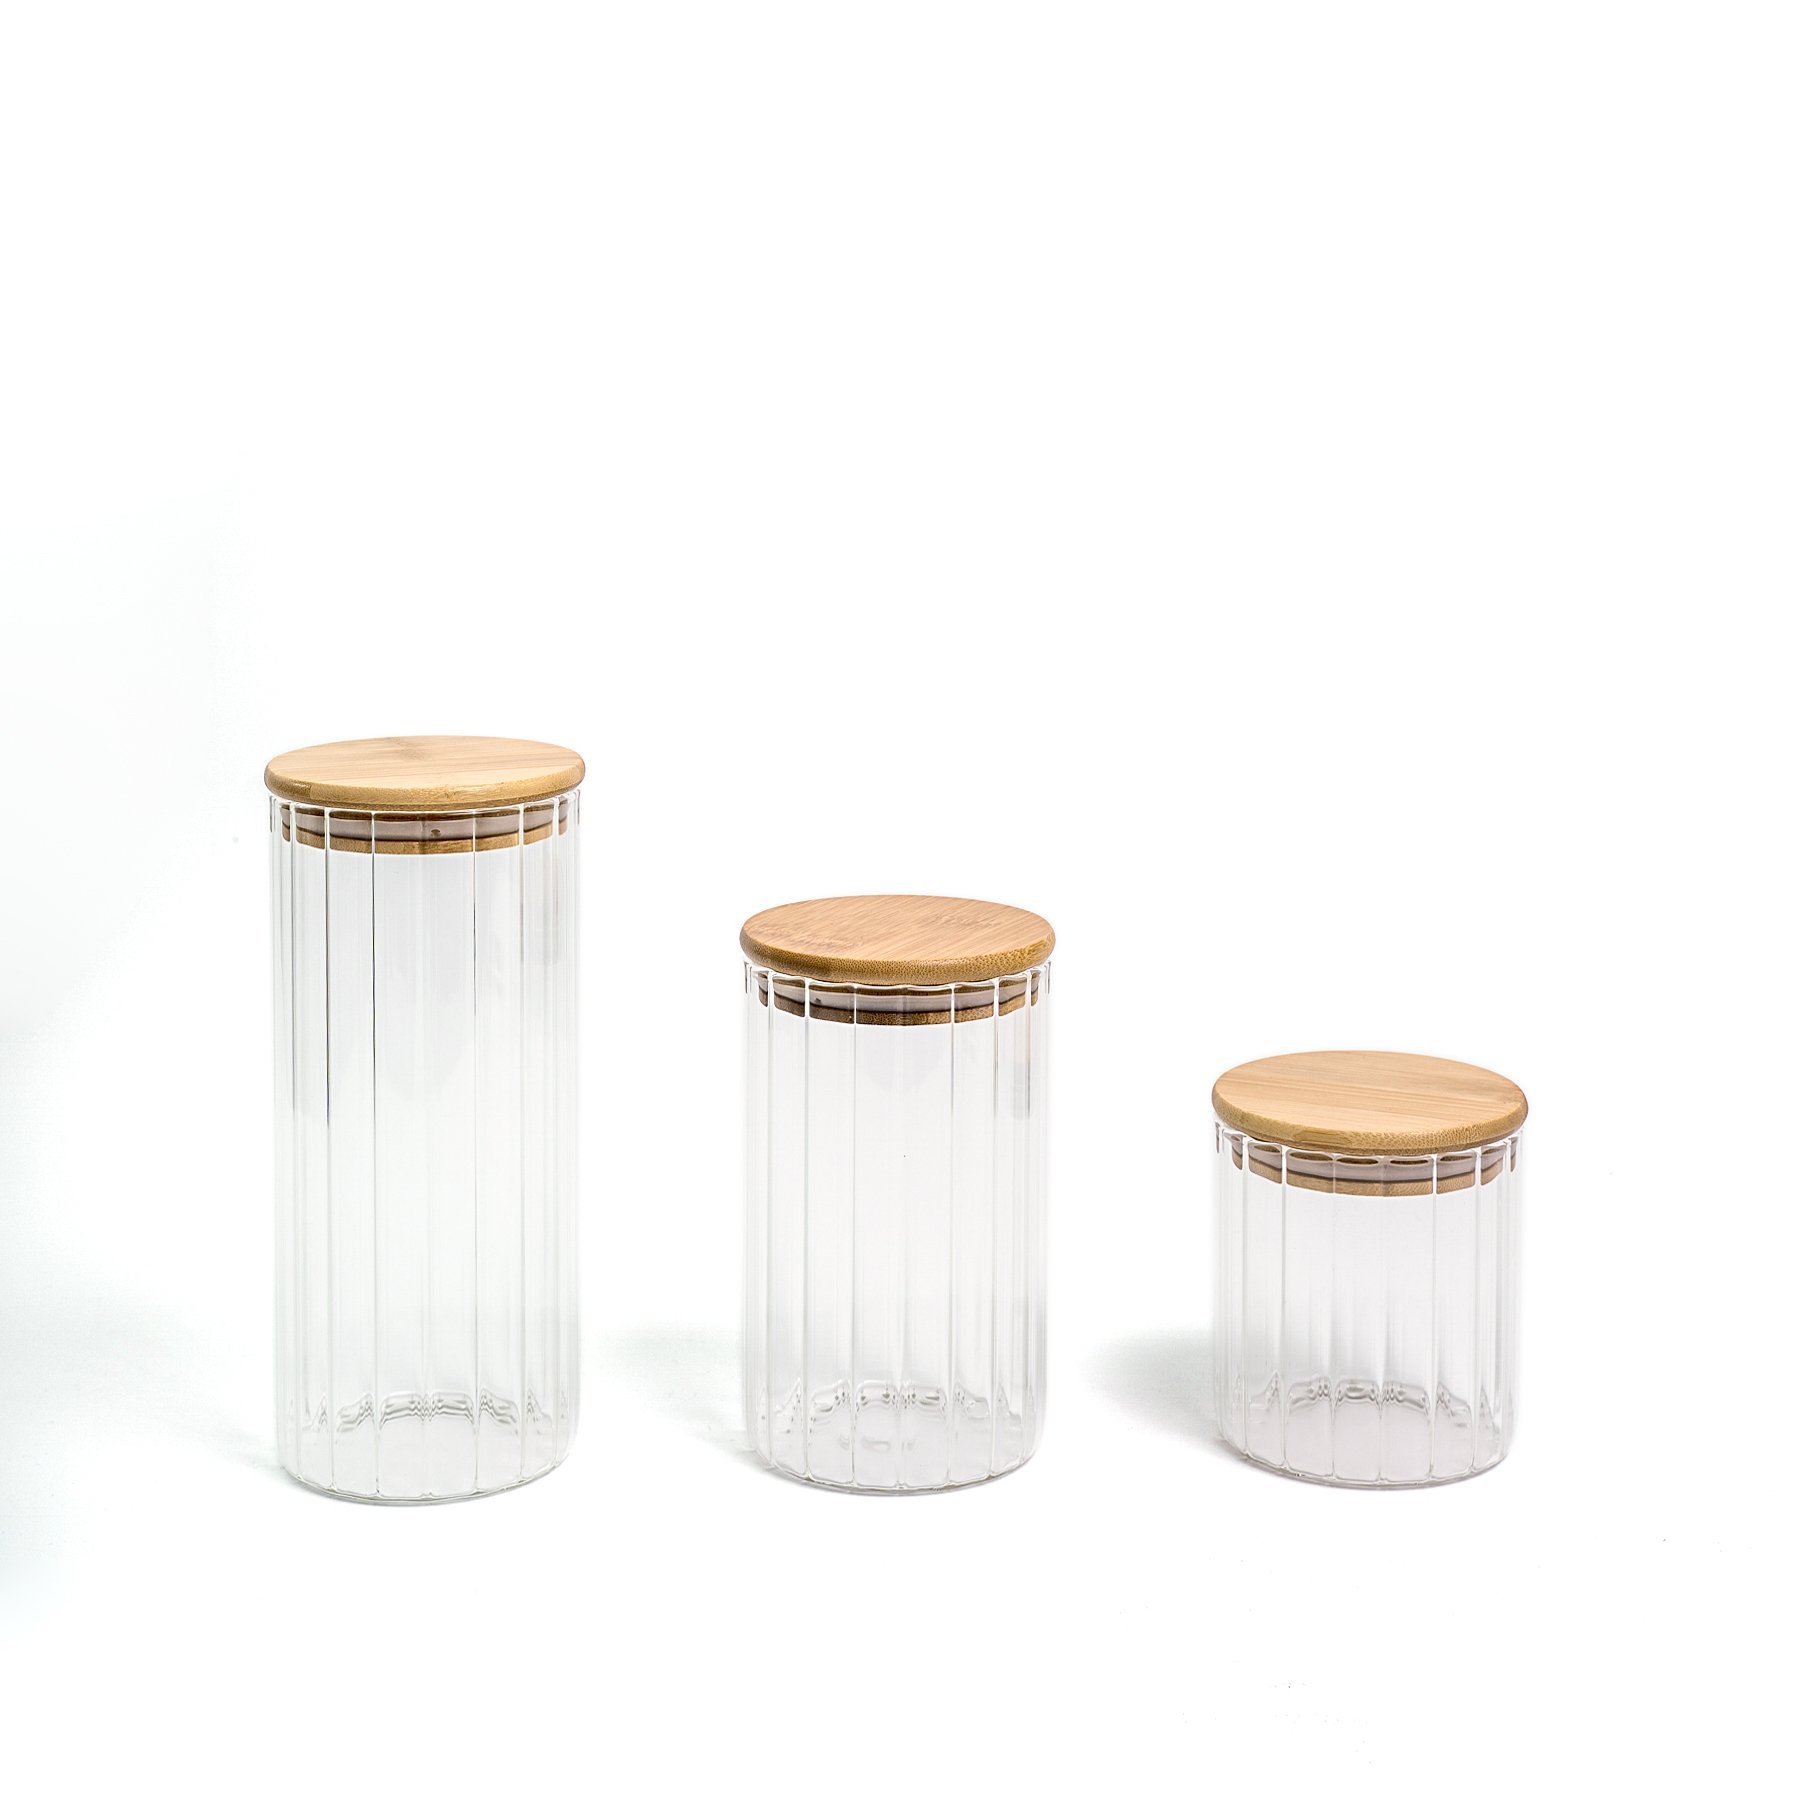 Pote 1100ml de vidro canelado com tampa de bambu de mantimento - Oikos - 7